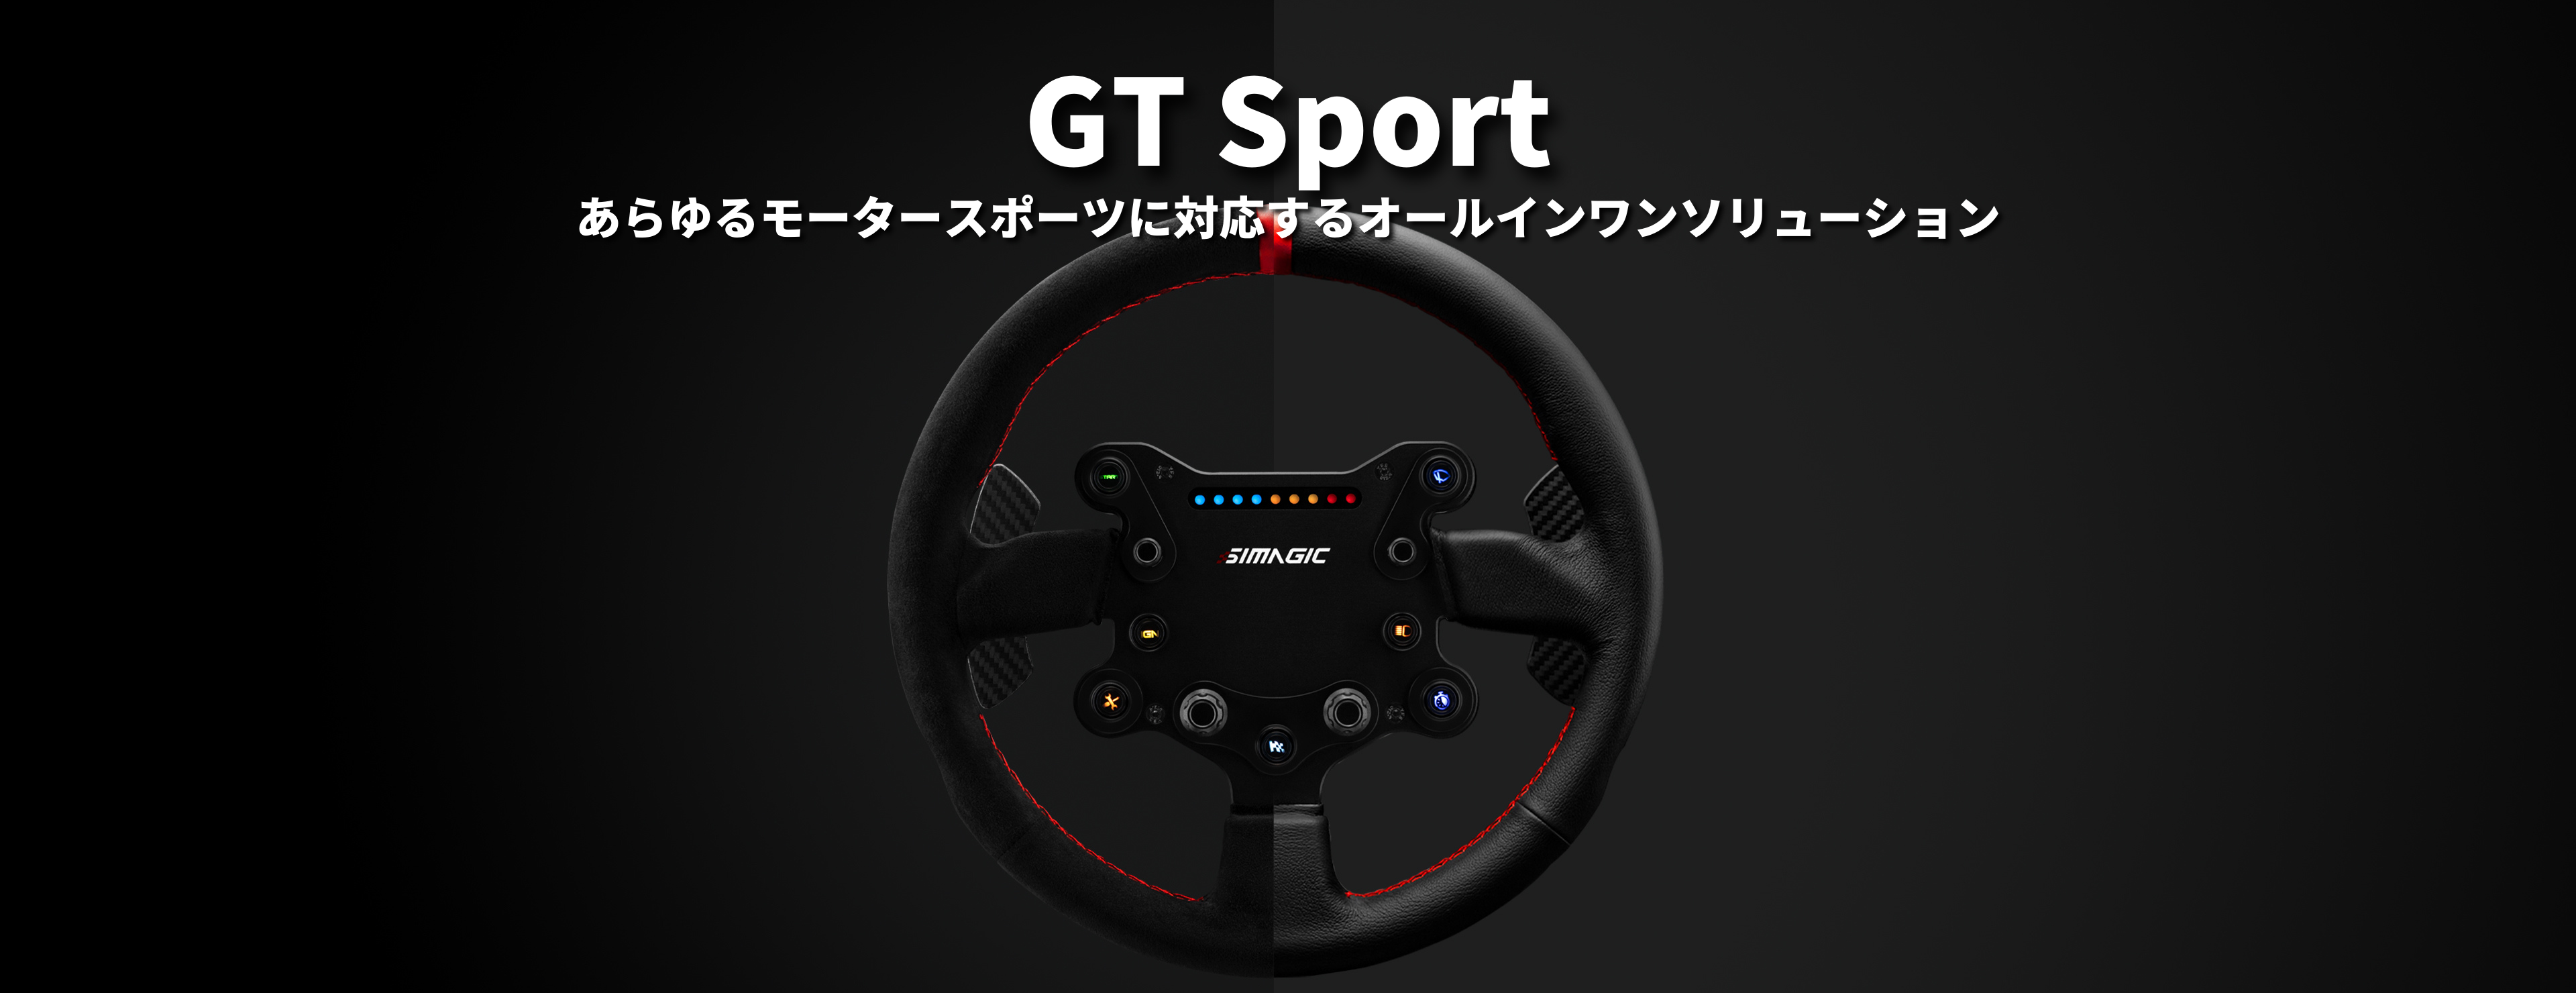 Simagic GT Sport ステアリング レザー 国内正規品 : simagic-gts 